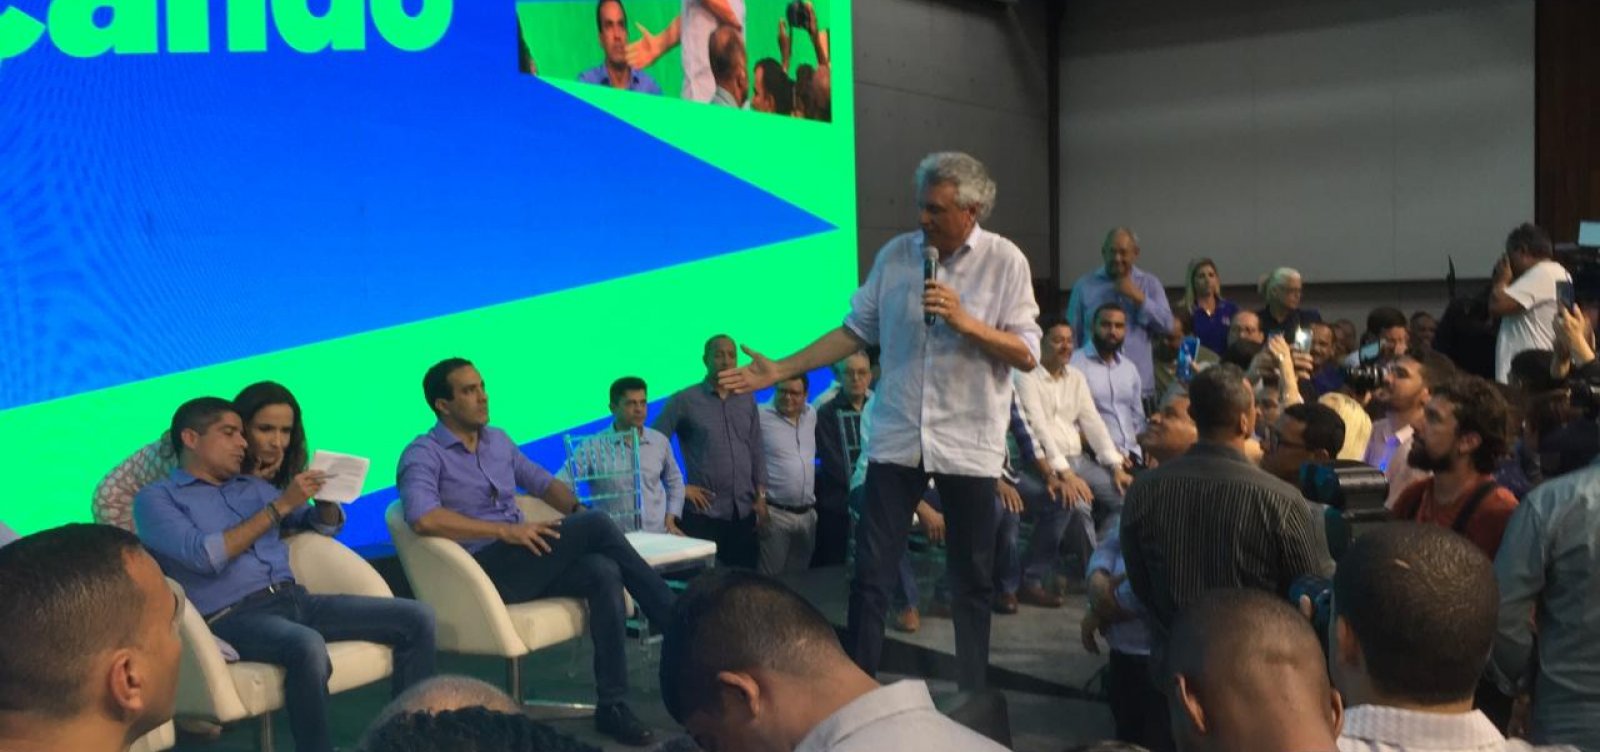 Governador de Goiás acredita em 'bençãos' a Bruno durante lançamento em Dia de Reis